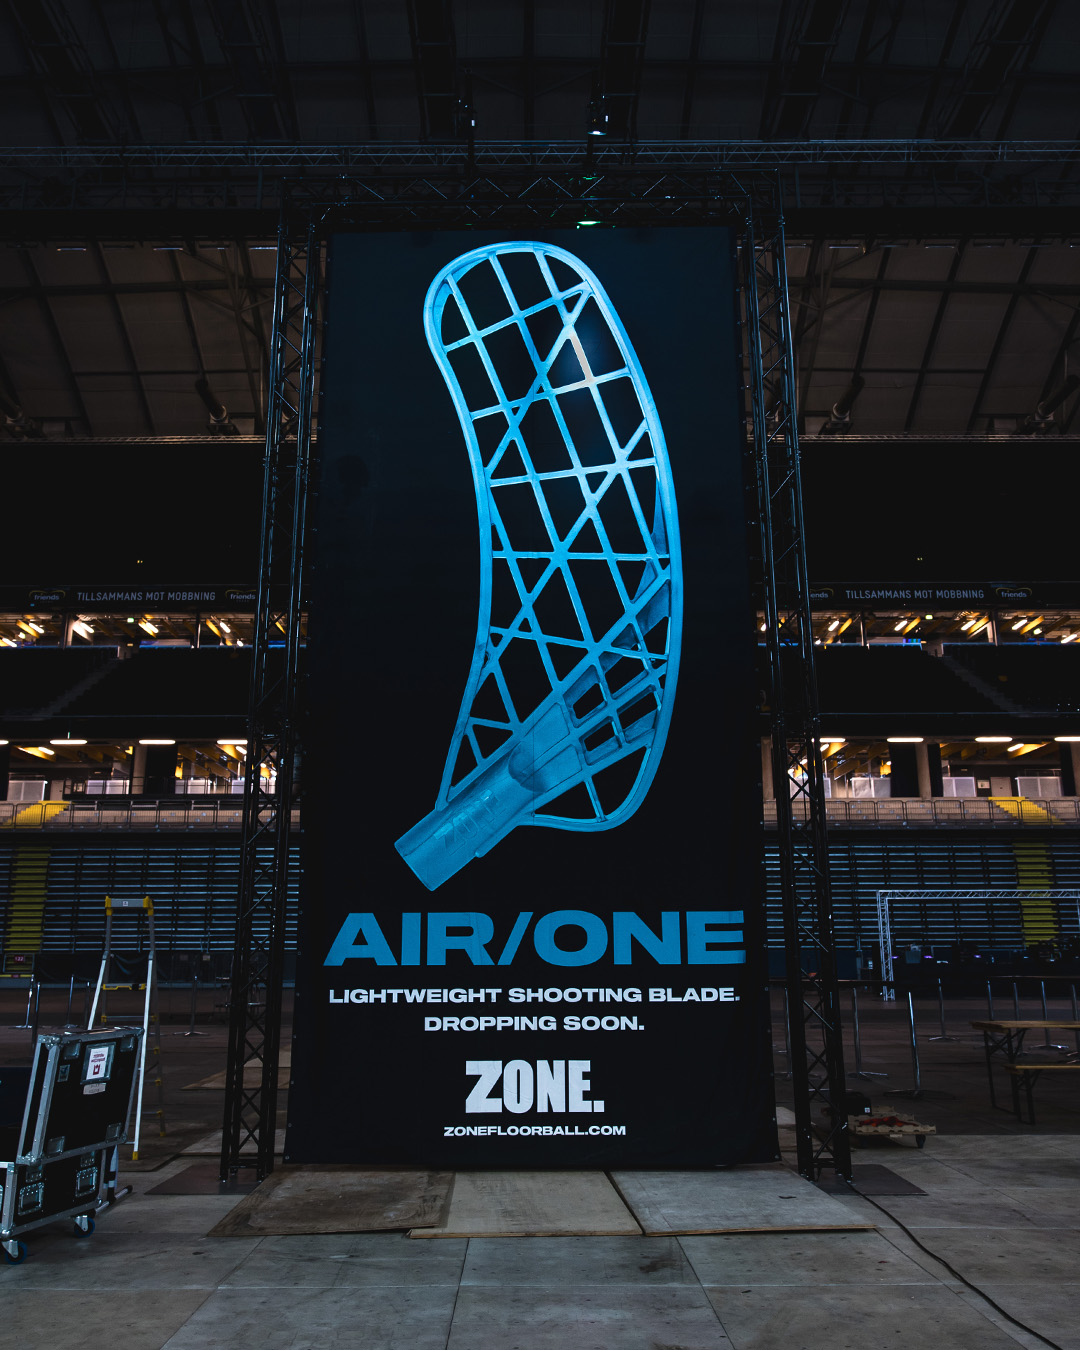 Čepel Zone AIR/ONE